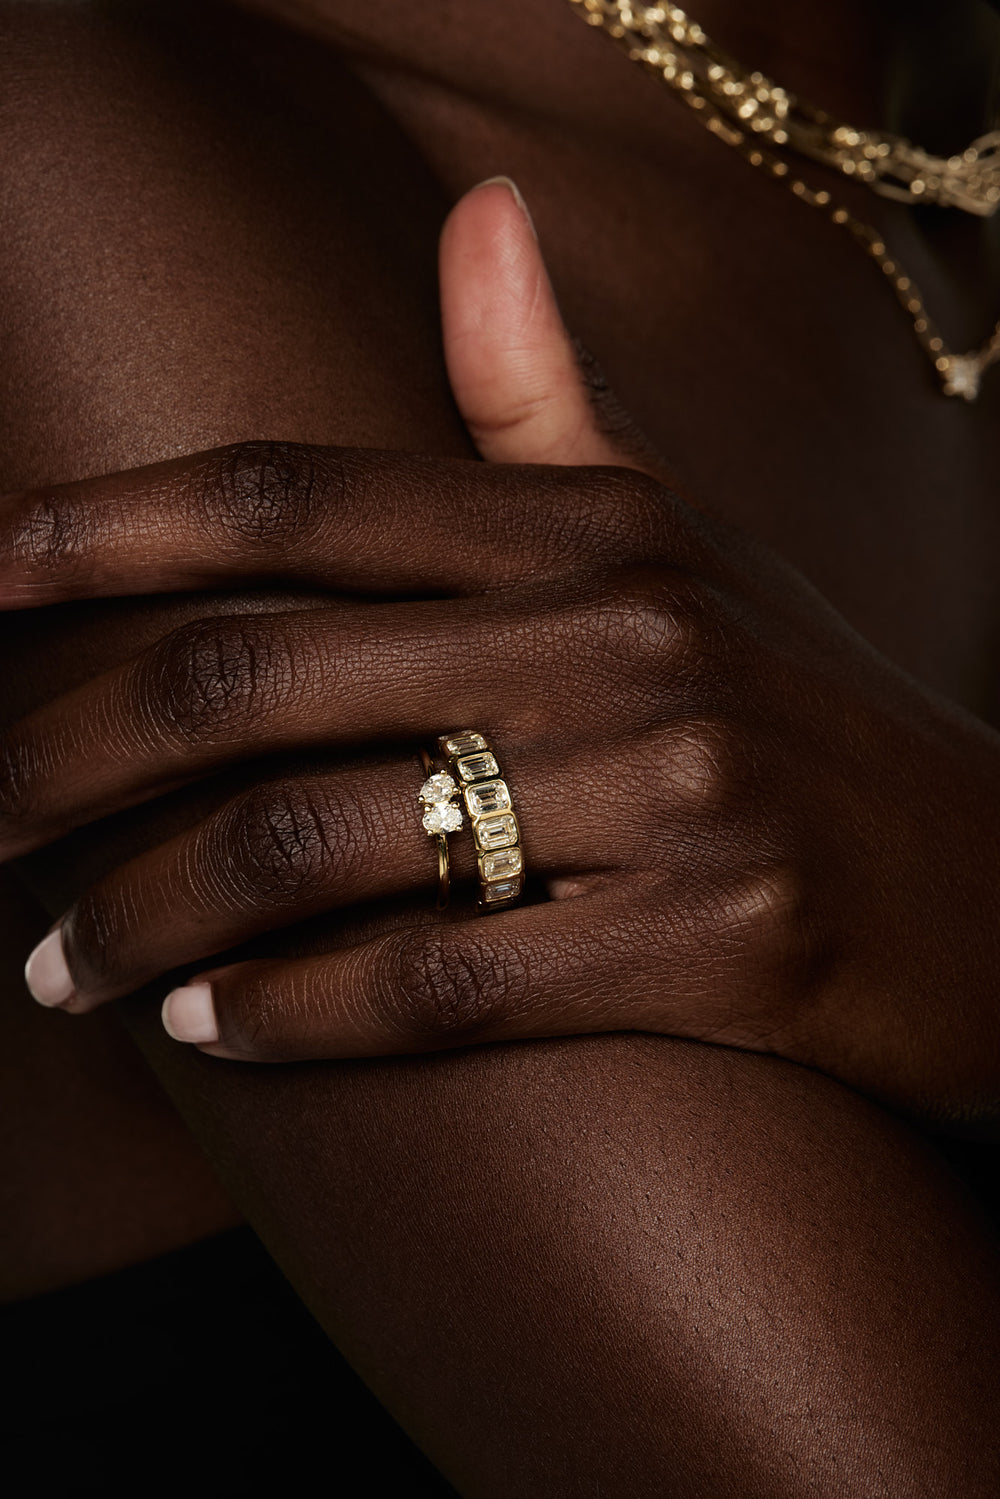 Pear and Oval Diamond Toi Et Moi Ring | 18K White Gold| Natasha Schweitzer